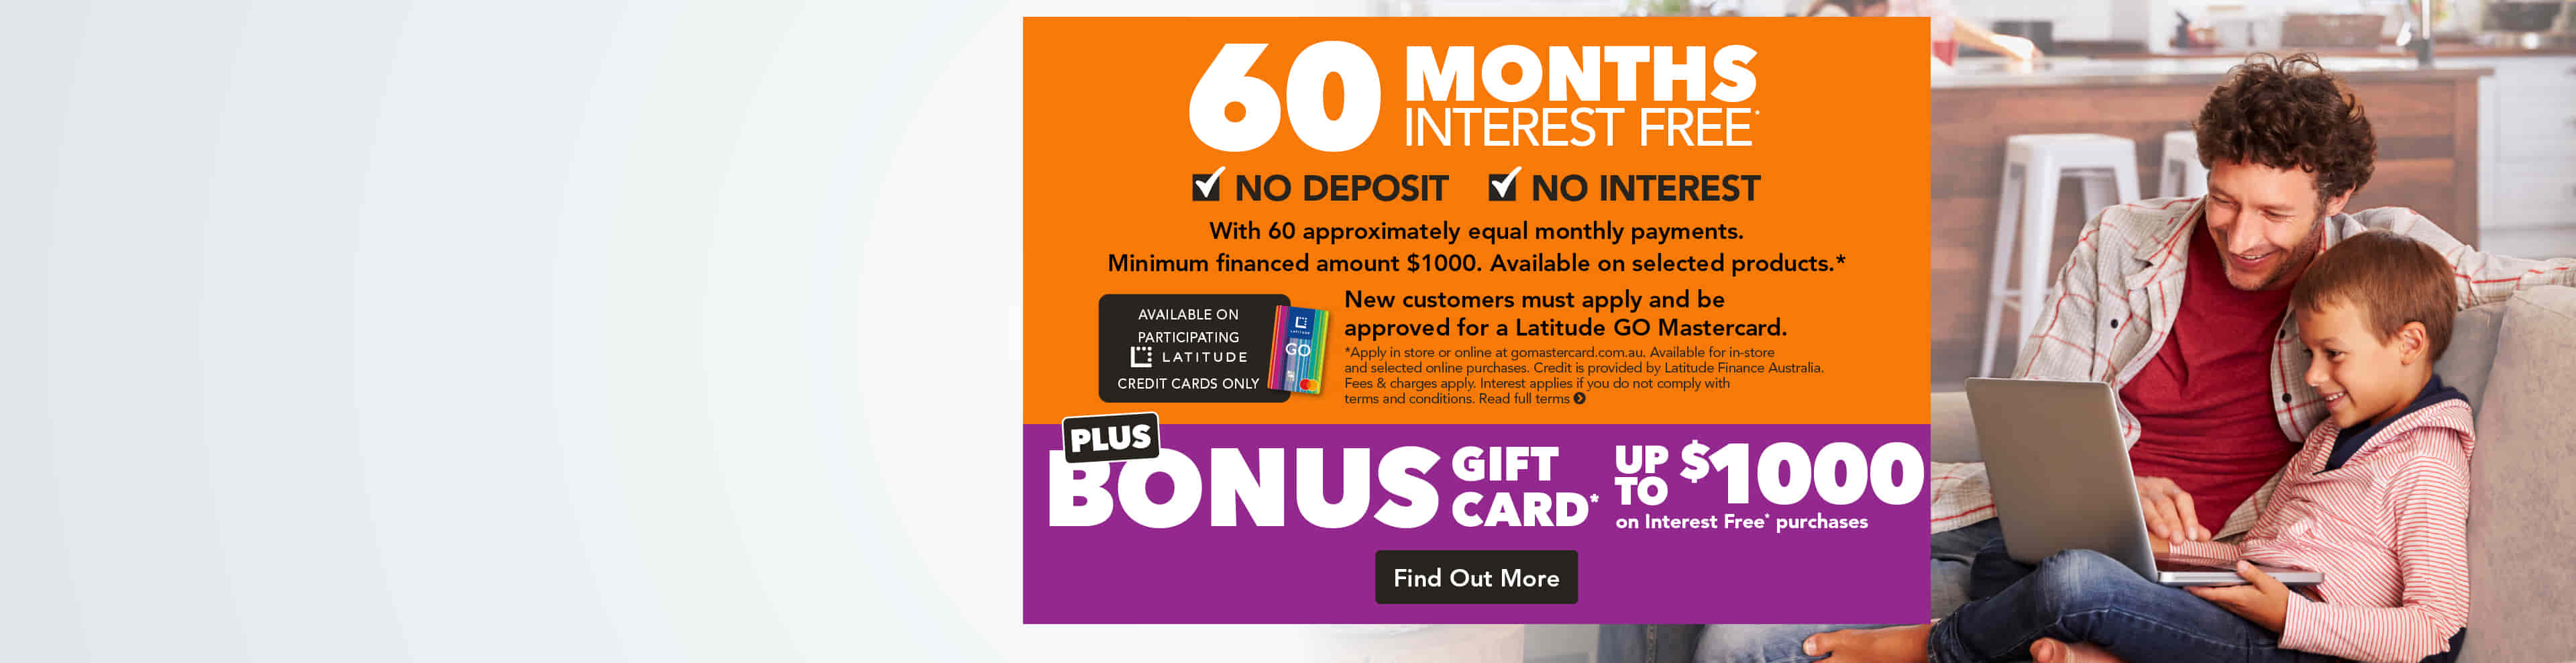 60 Months Interest Free